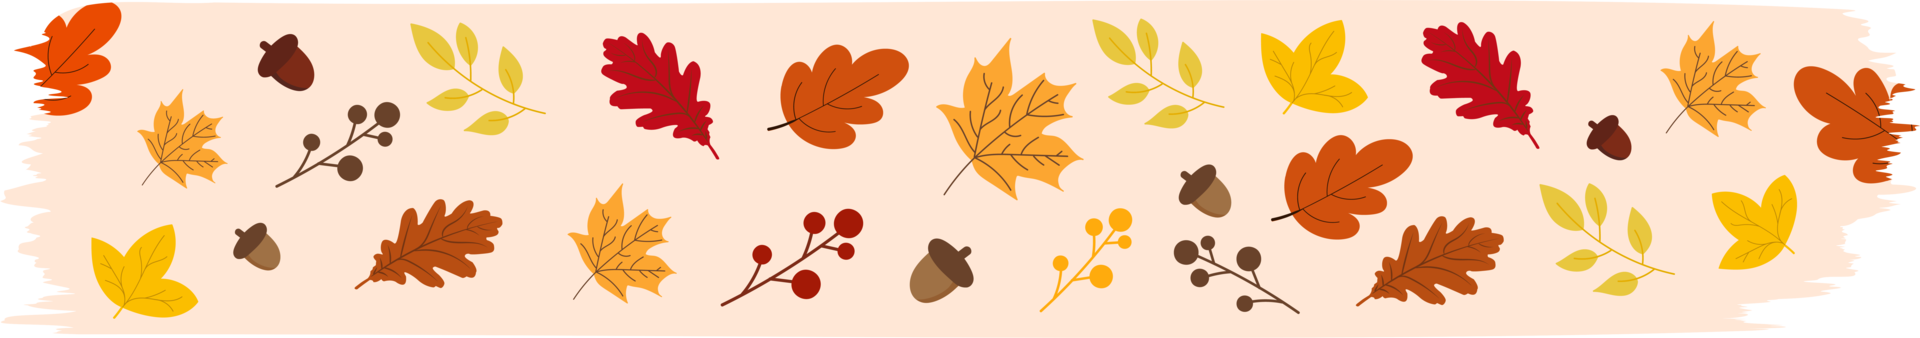 washi tape outono sazonal com folhas caindo, símbolos de elementos florais png